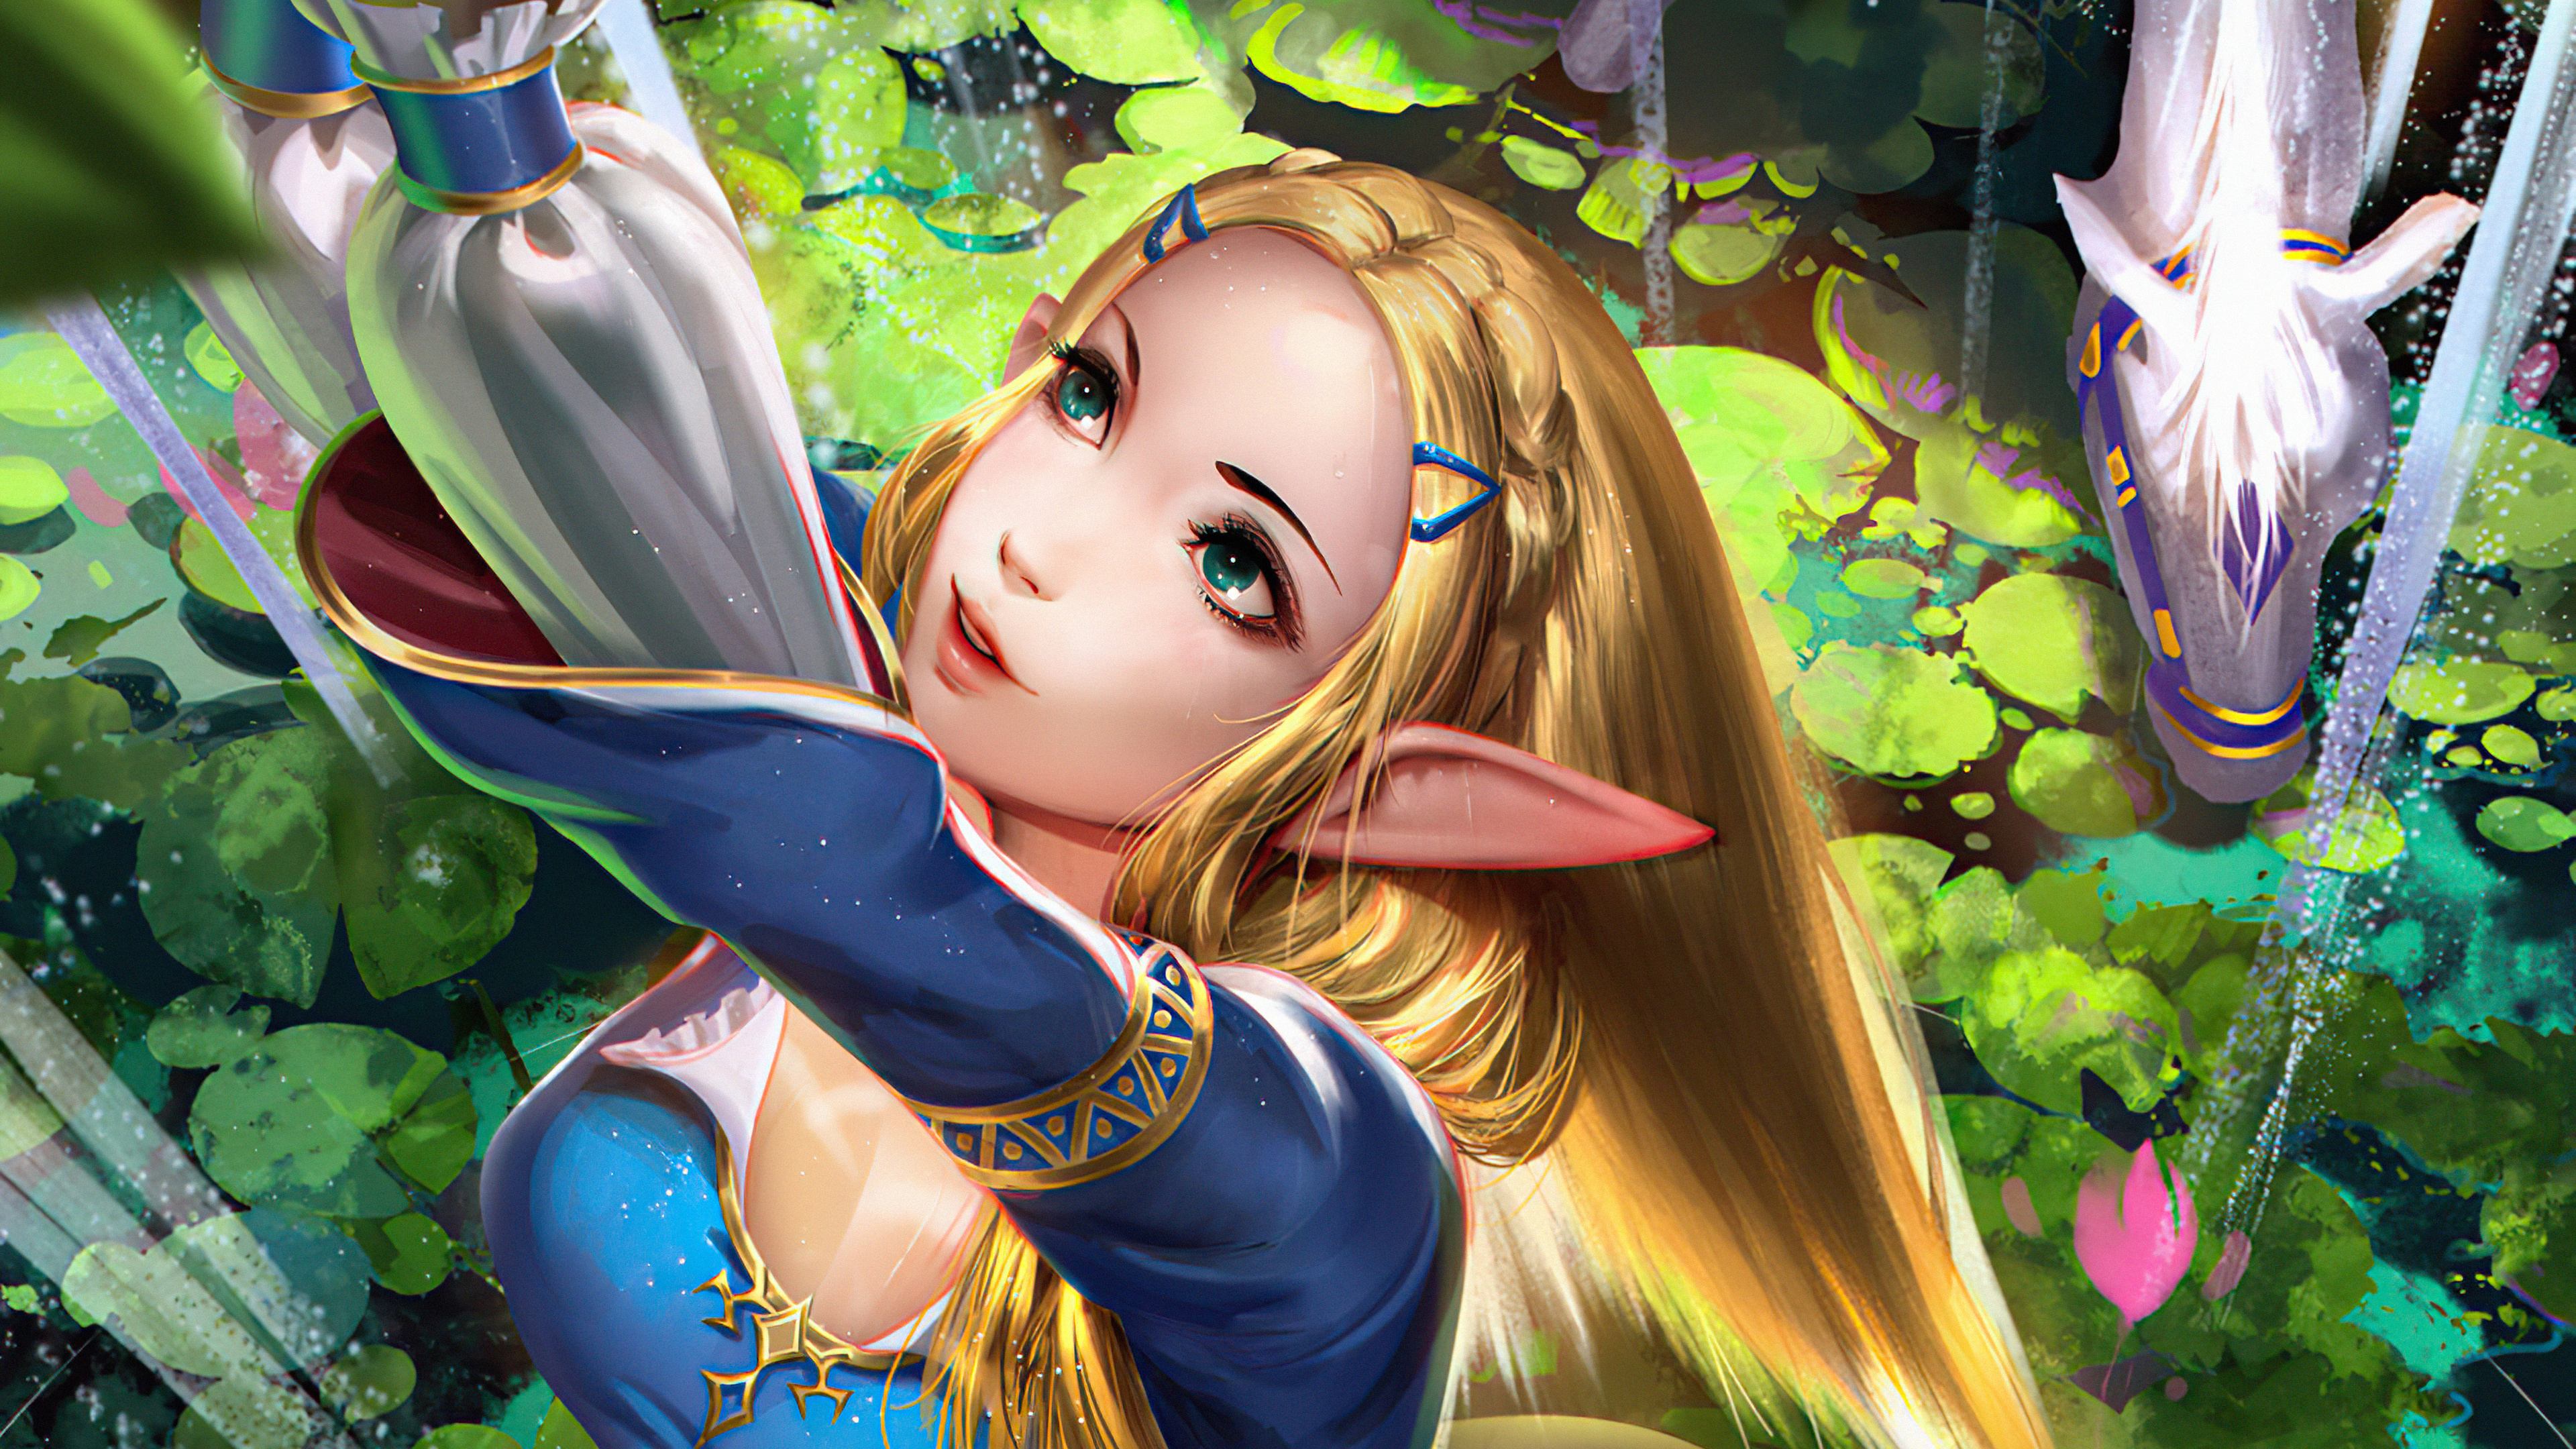 Princess Zelda, High definition, Game visuals, Royal strength, Hyrule reign, 3840x2160 4K Desktop